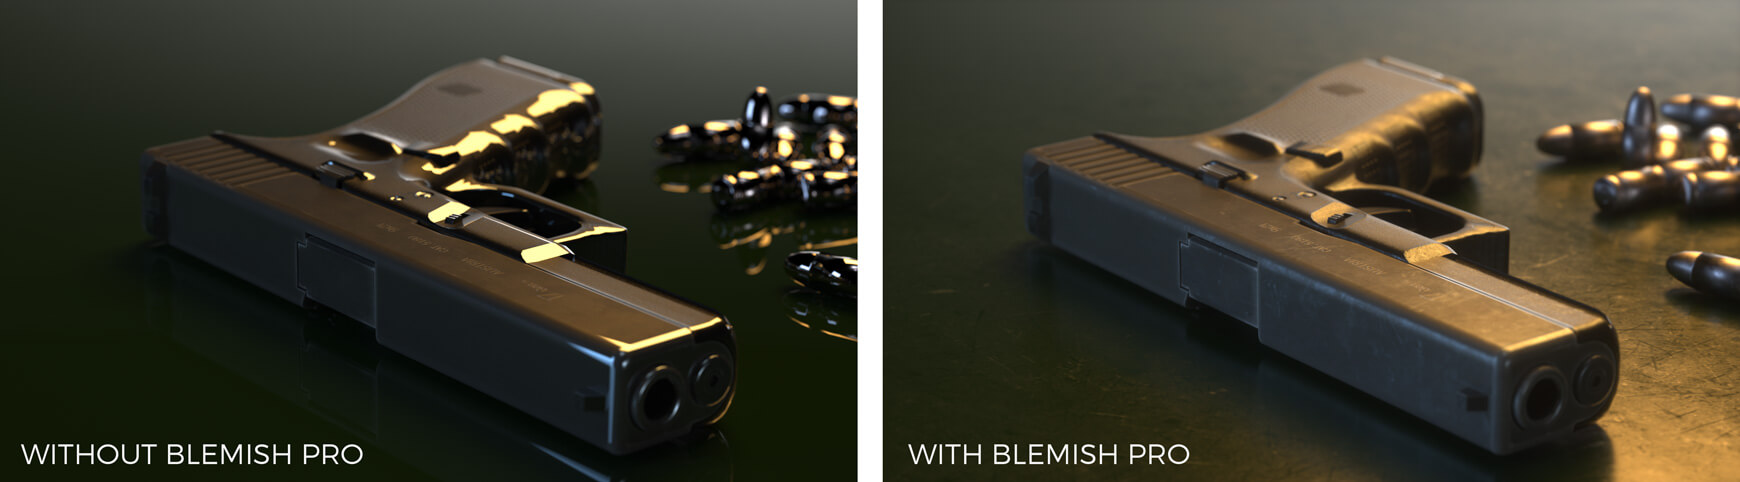 Blemish Pro Cinema 4D Otoy Octane Redshift V-ray Blender